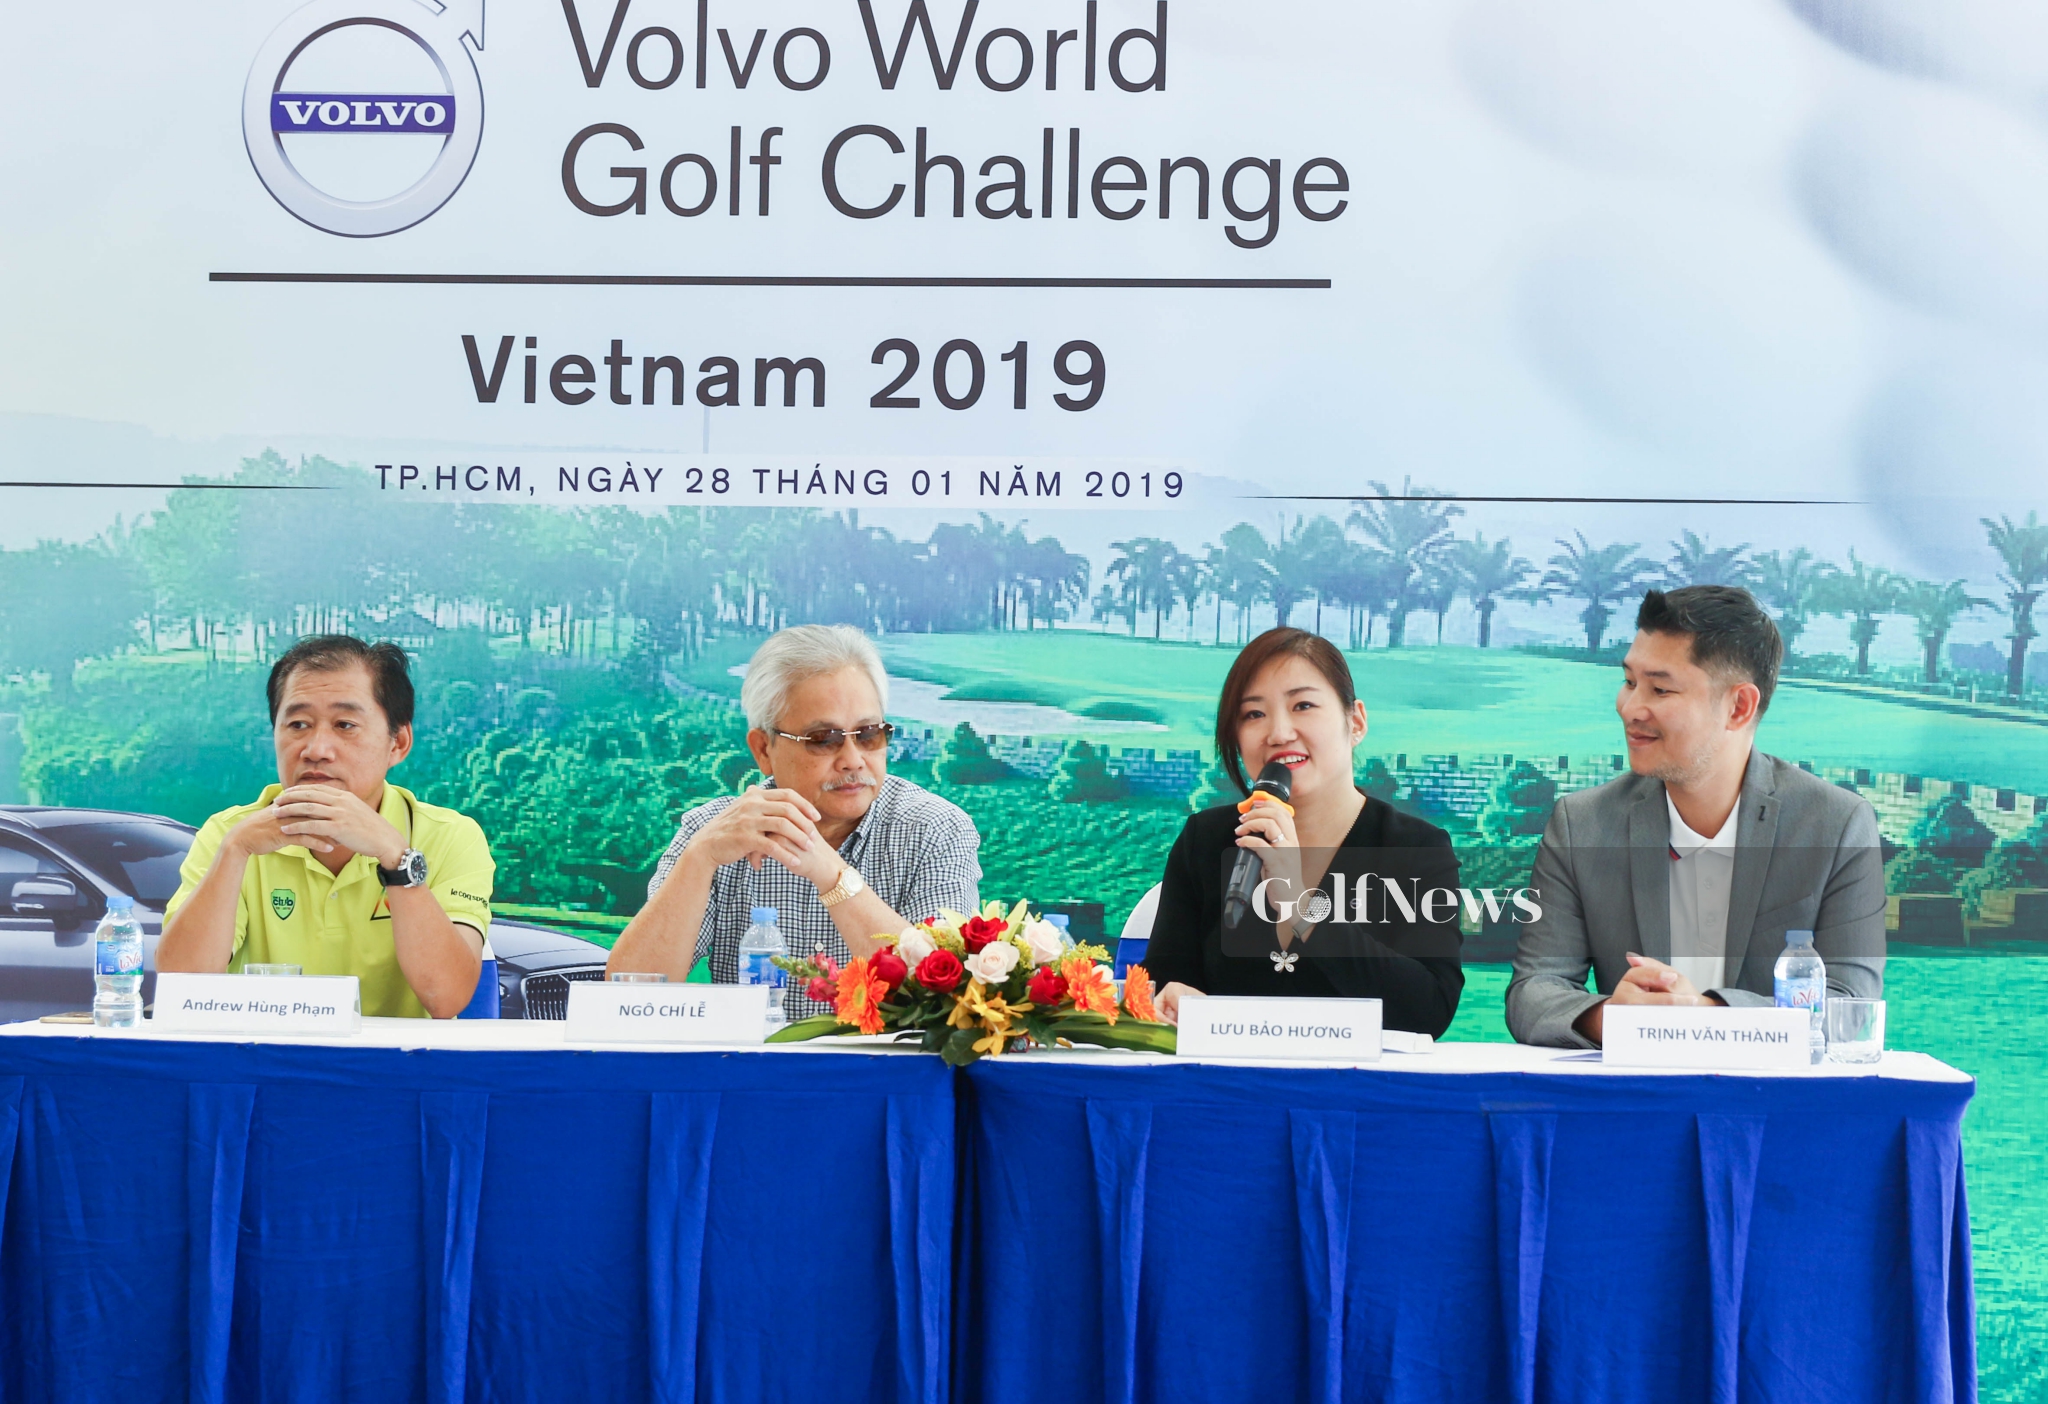 Volvo World Golf Challenge - Vietnam 2019 sẽ tổ chức tại TP.HCM và Hà Nội